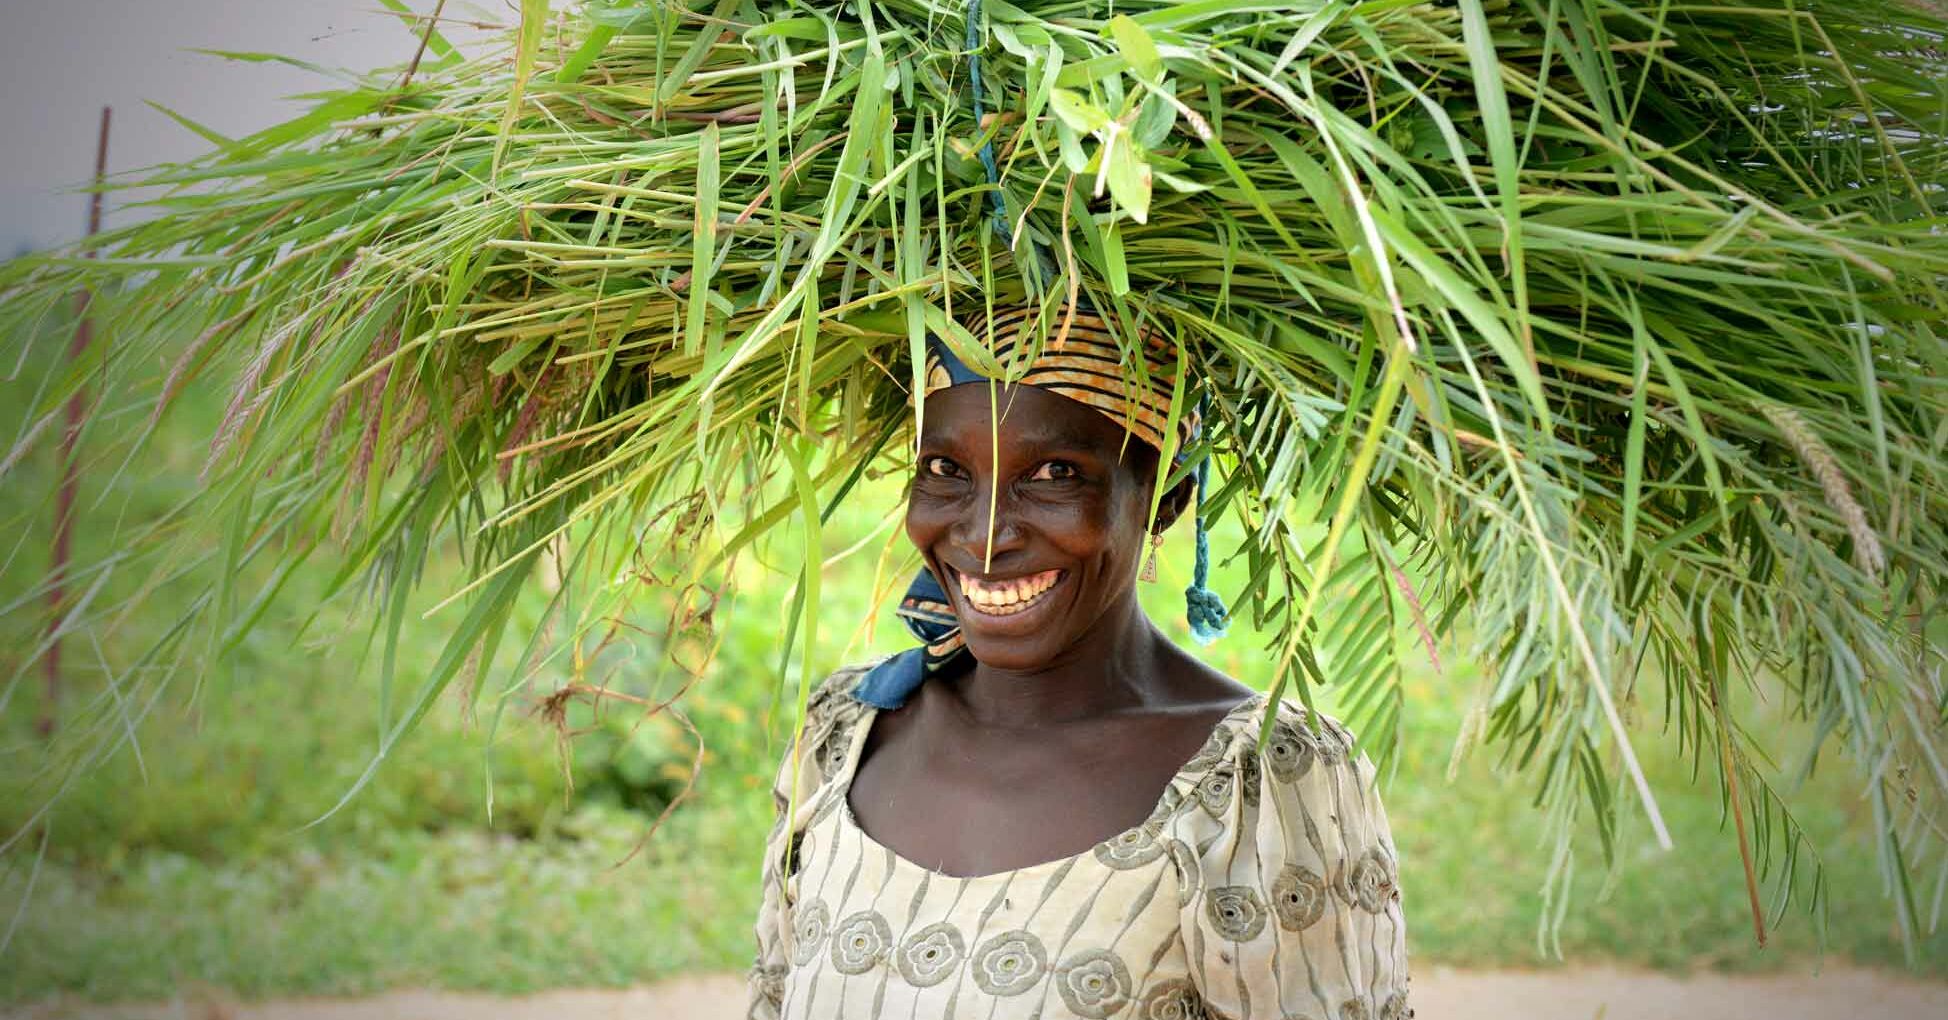 Afrikanerin mit Graspaket auf dem Kopf Umwelt_RF2129478.jpg